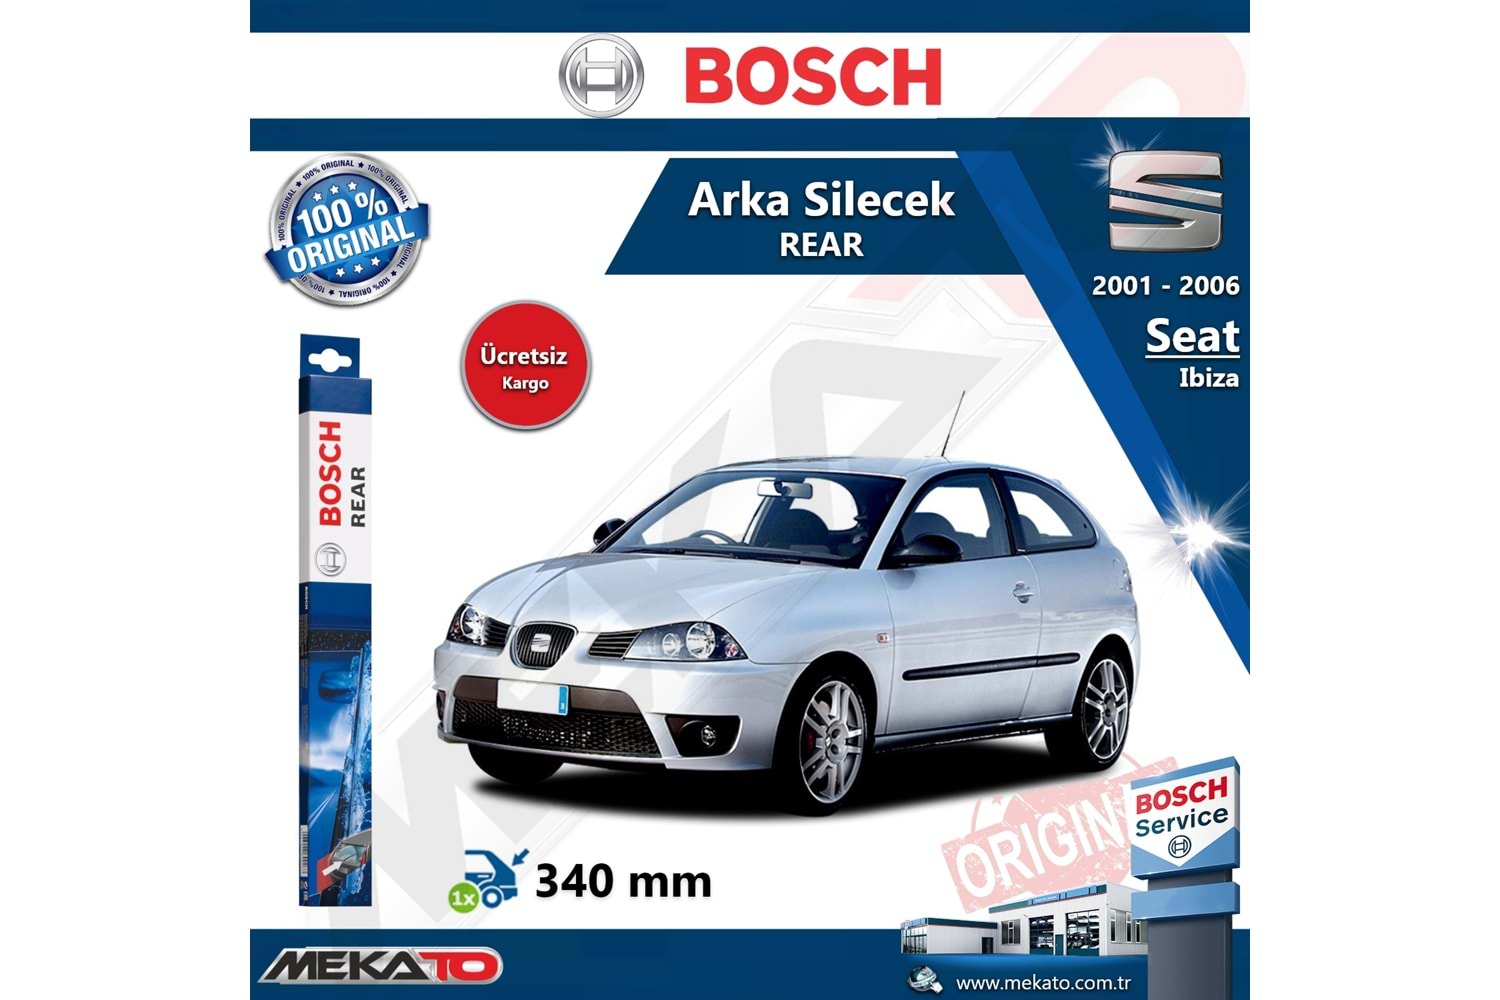 Seat Ibiza Arka Silecek Bosch Rear 2001-2006